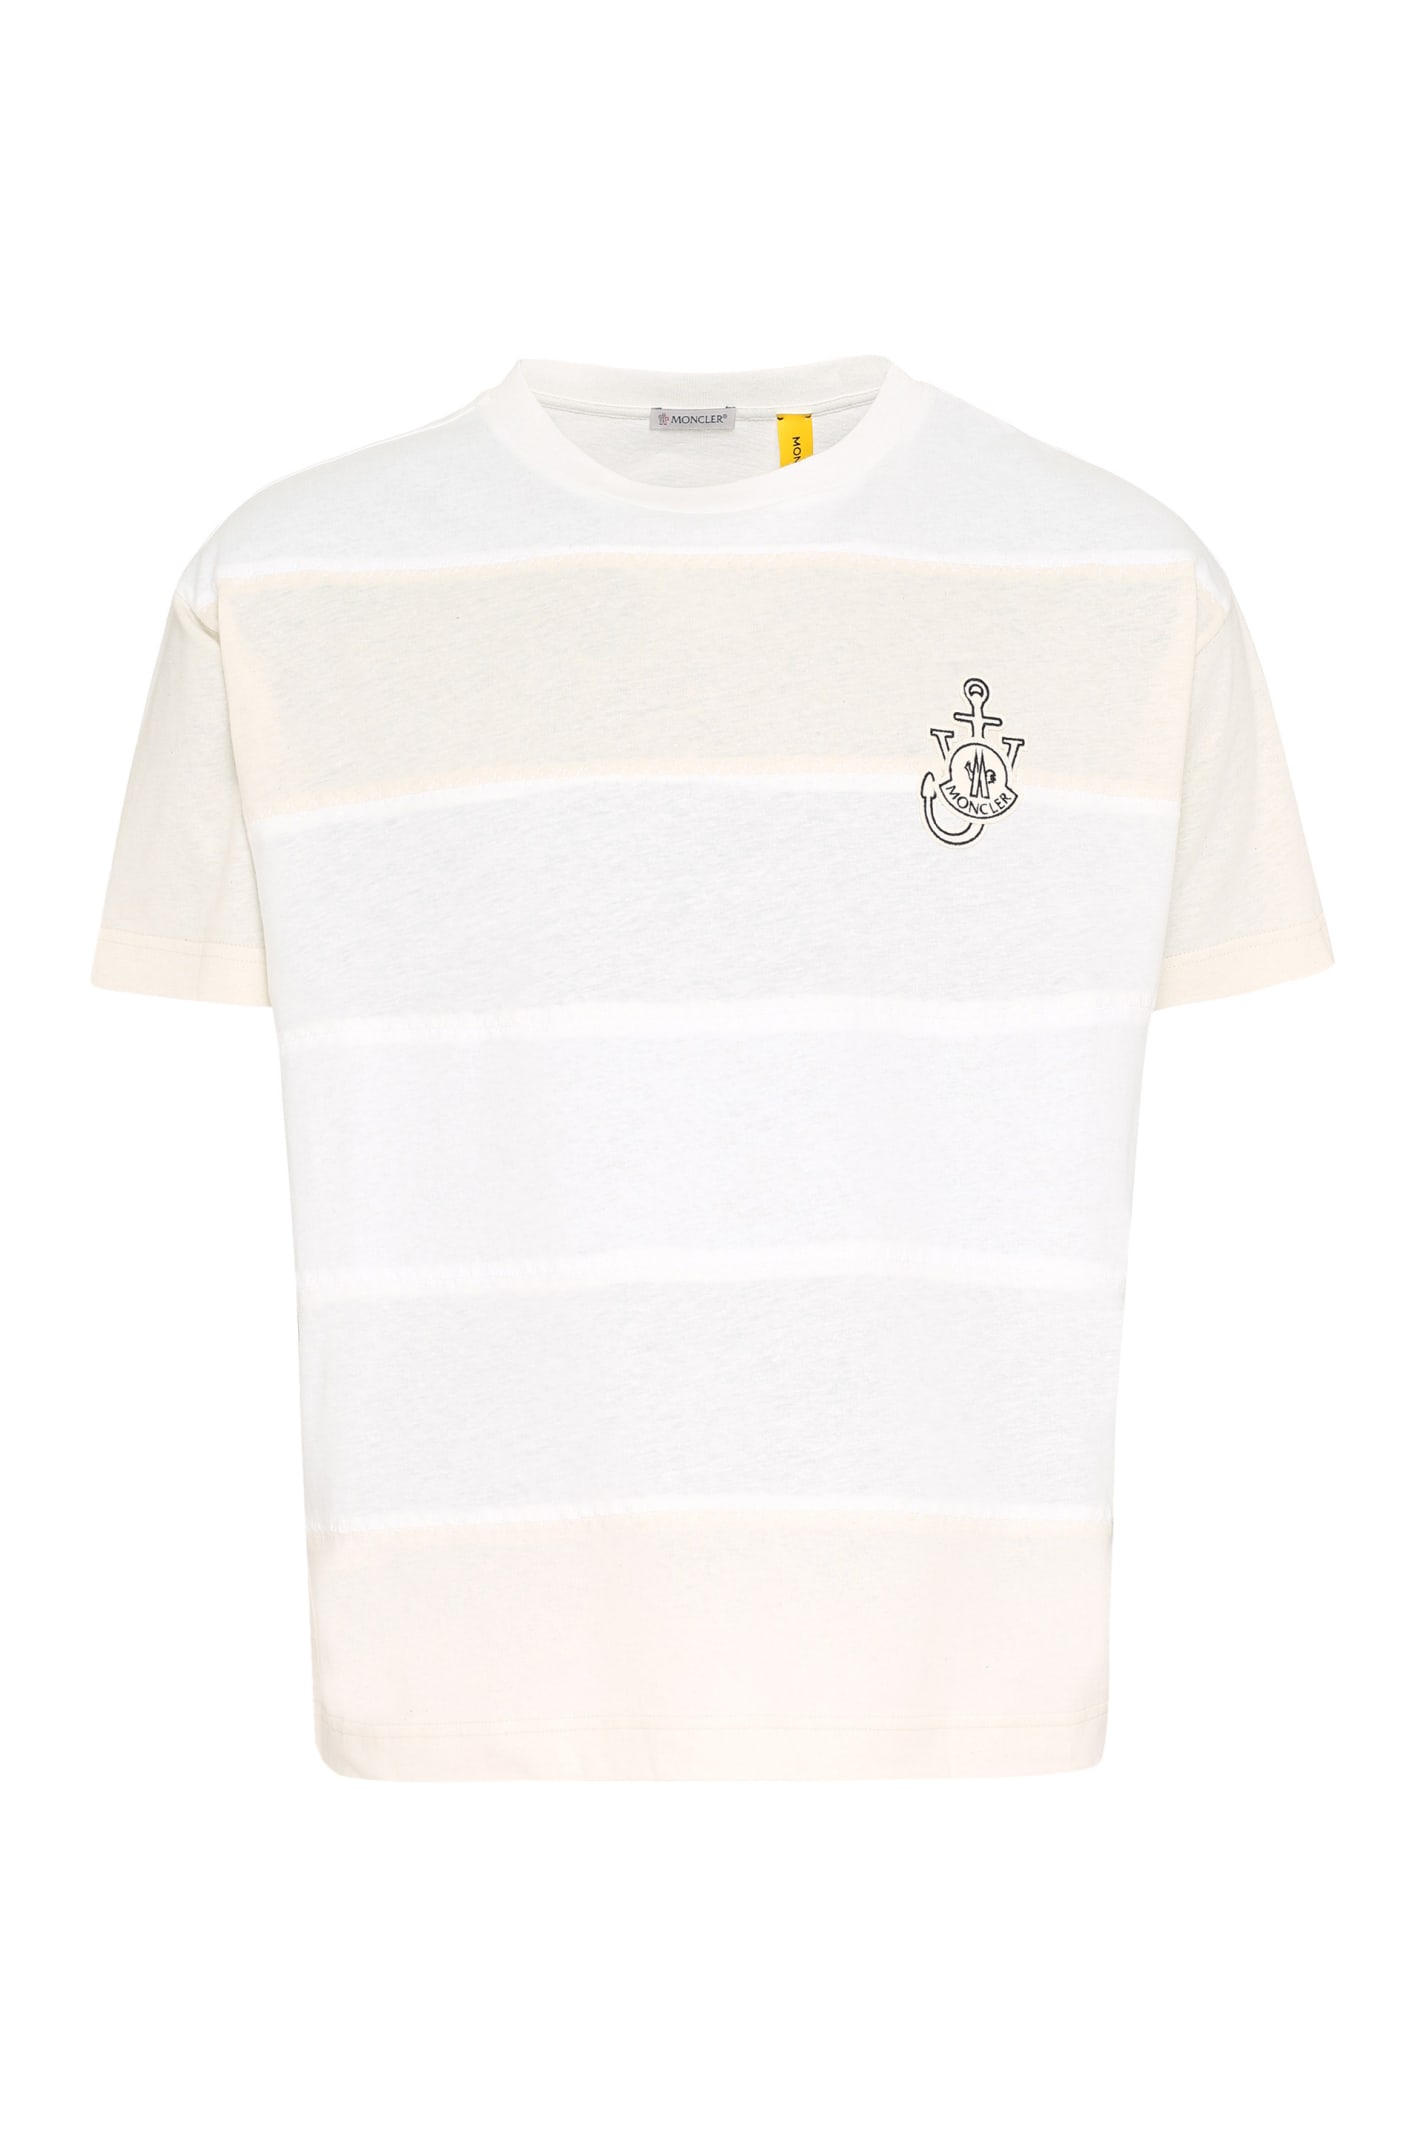 Moncler Genius 1 Moncler Jw Anderson - Patch Detail Cotton T-shirt